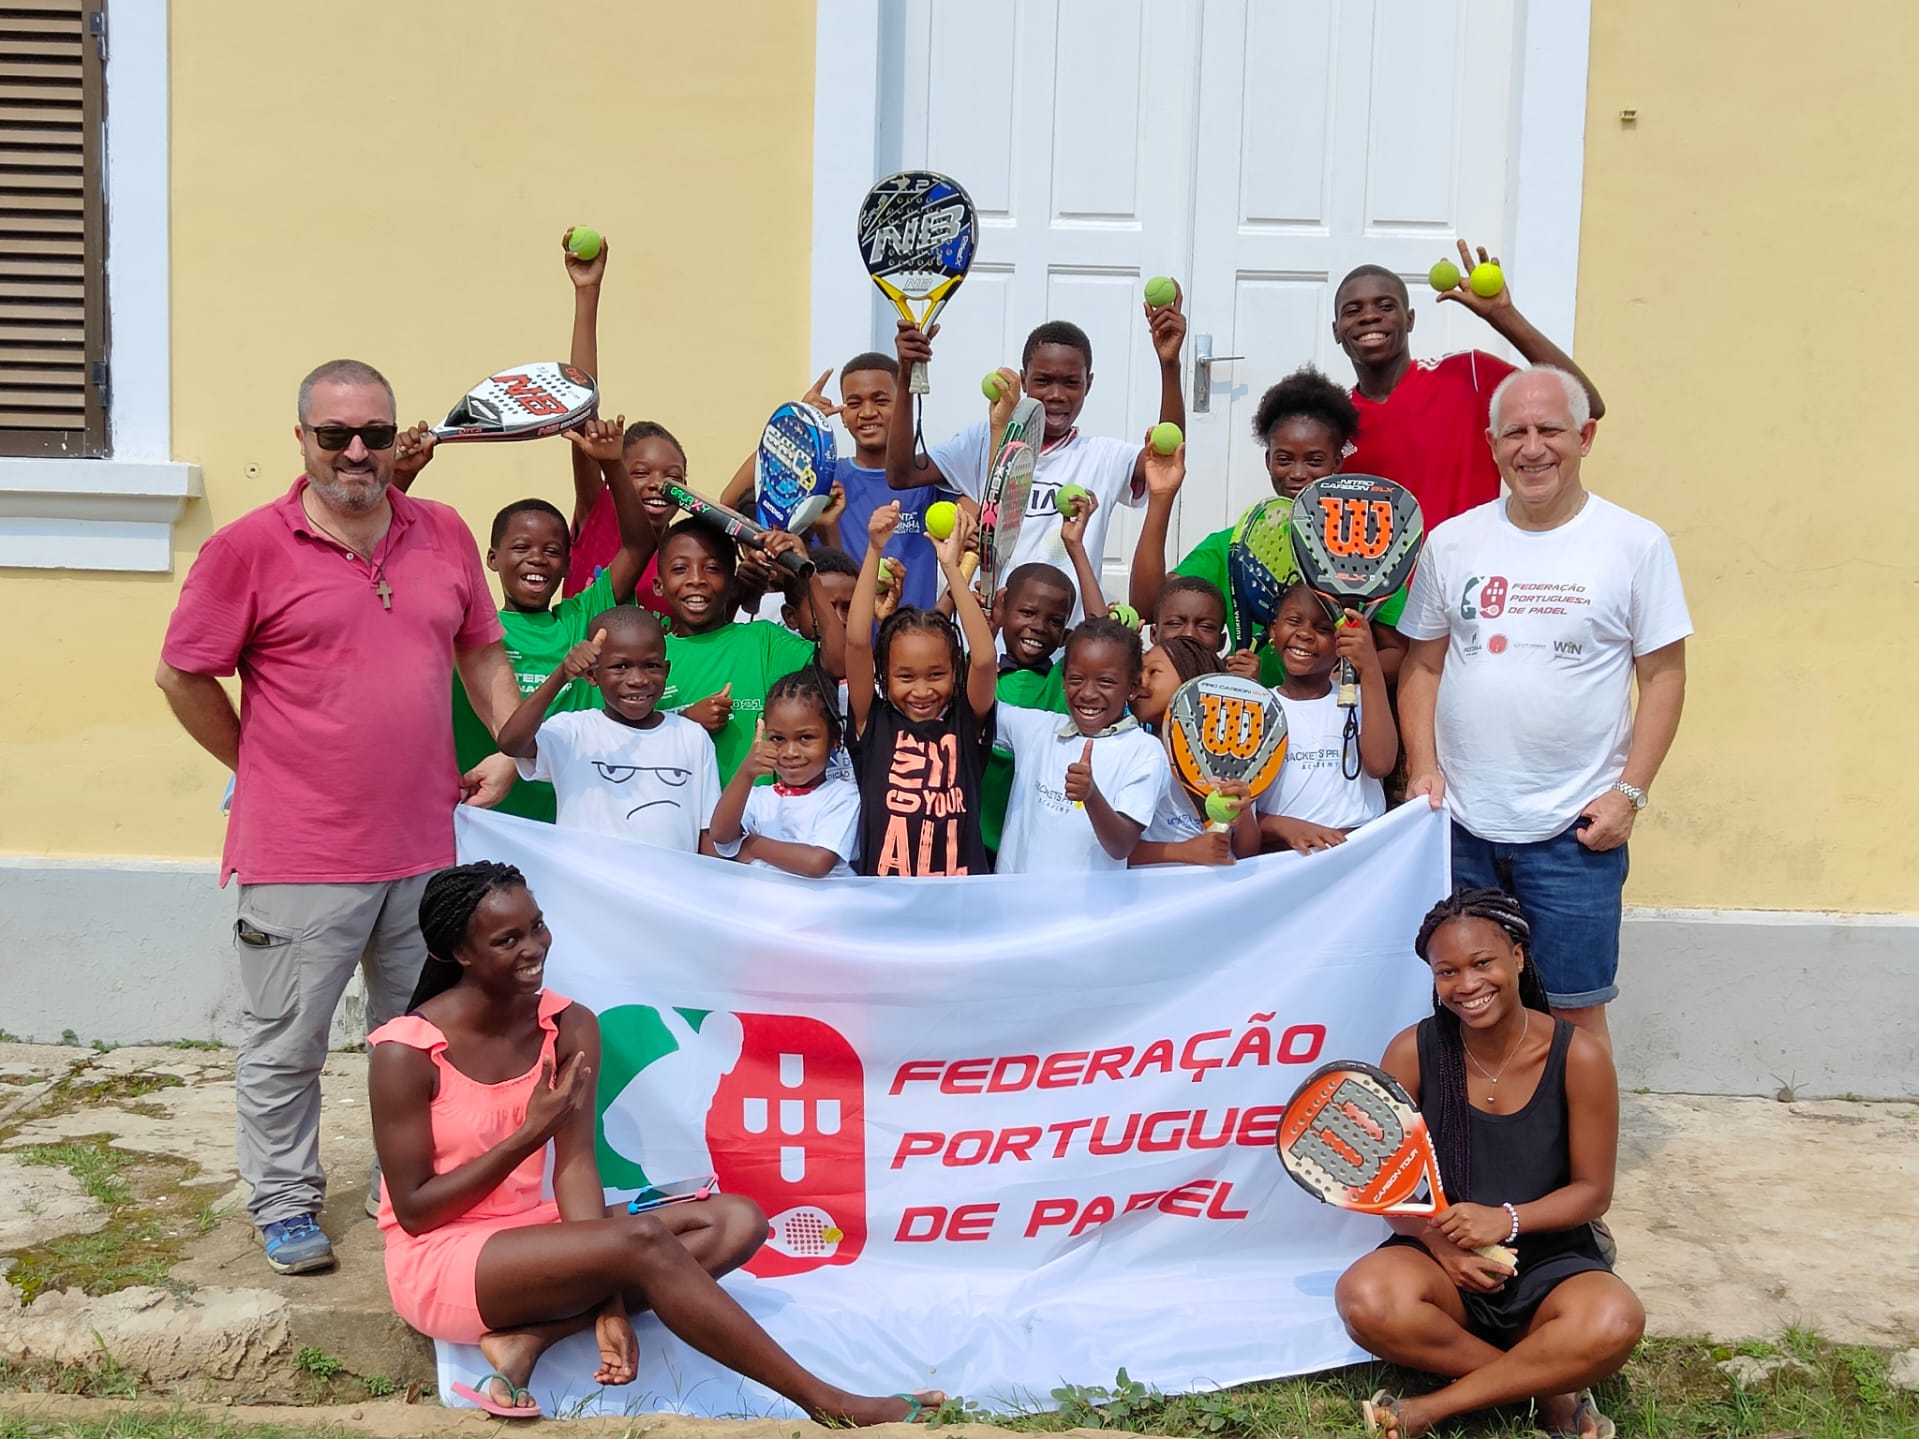 La gran iniciativa de la federació portuguesa a Principe